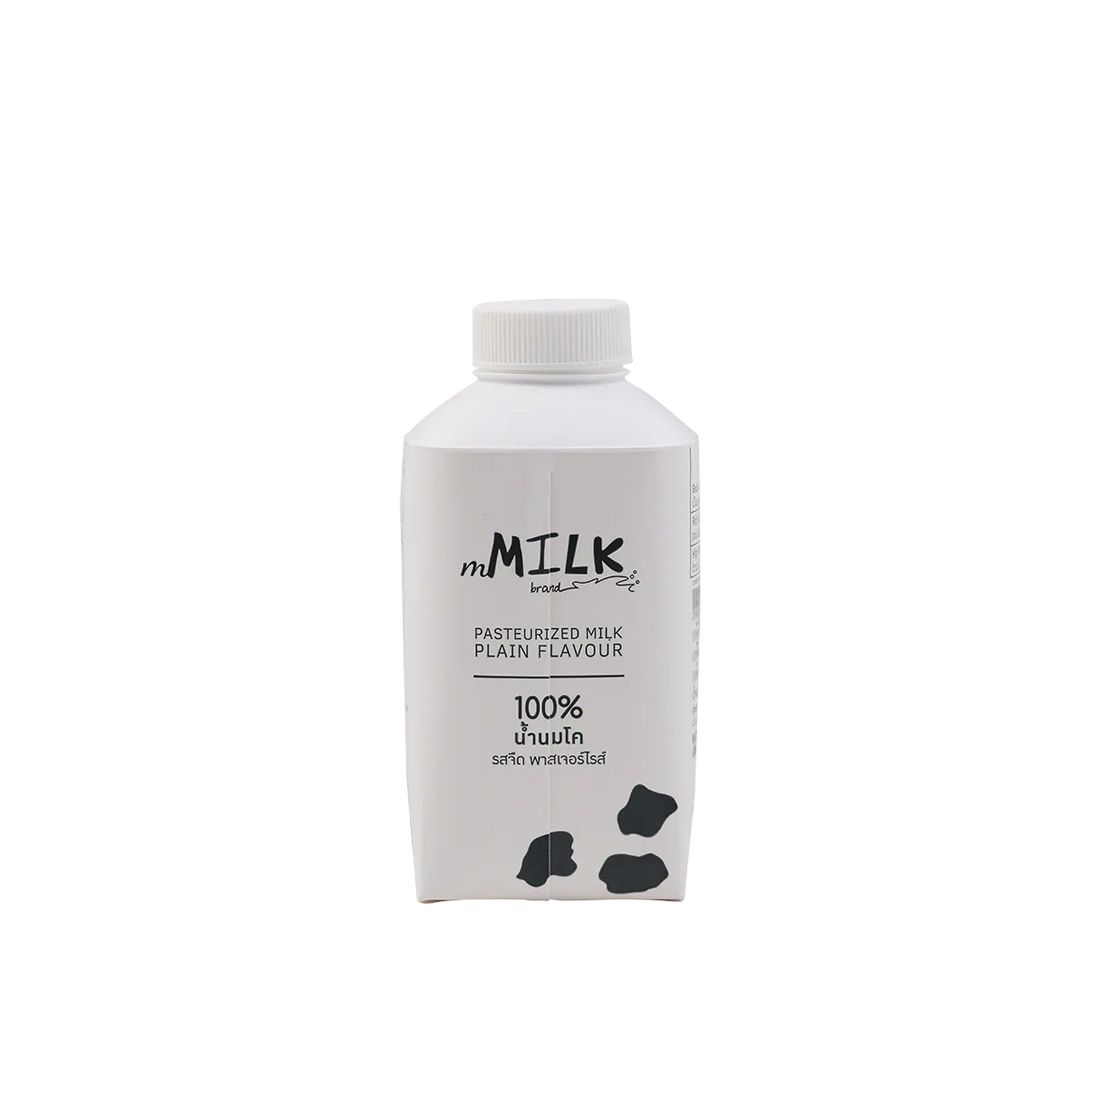 Mmilk Pasteurized Milk Plain Flavour 430Ml.